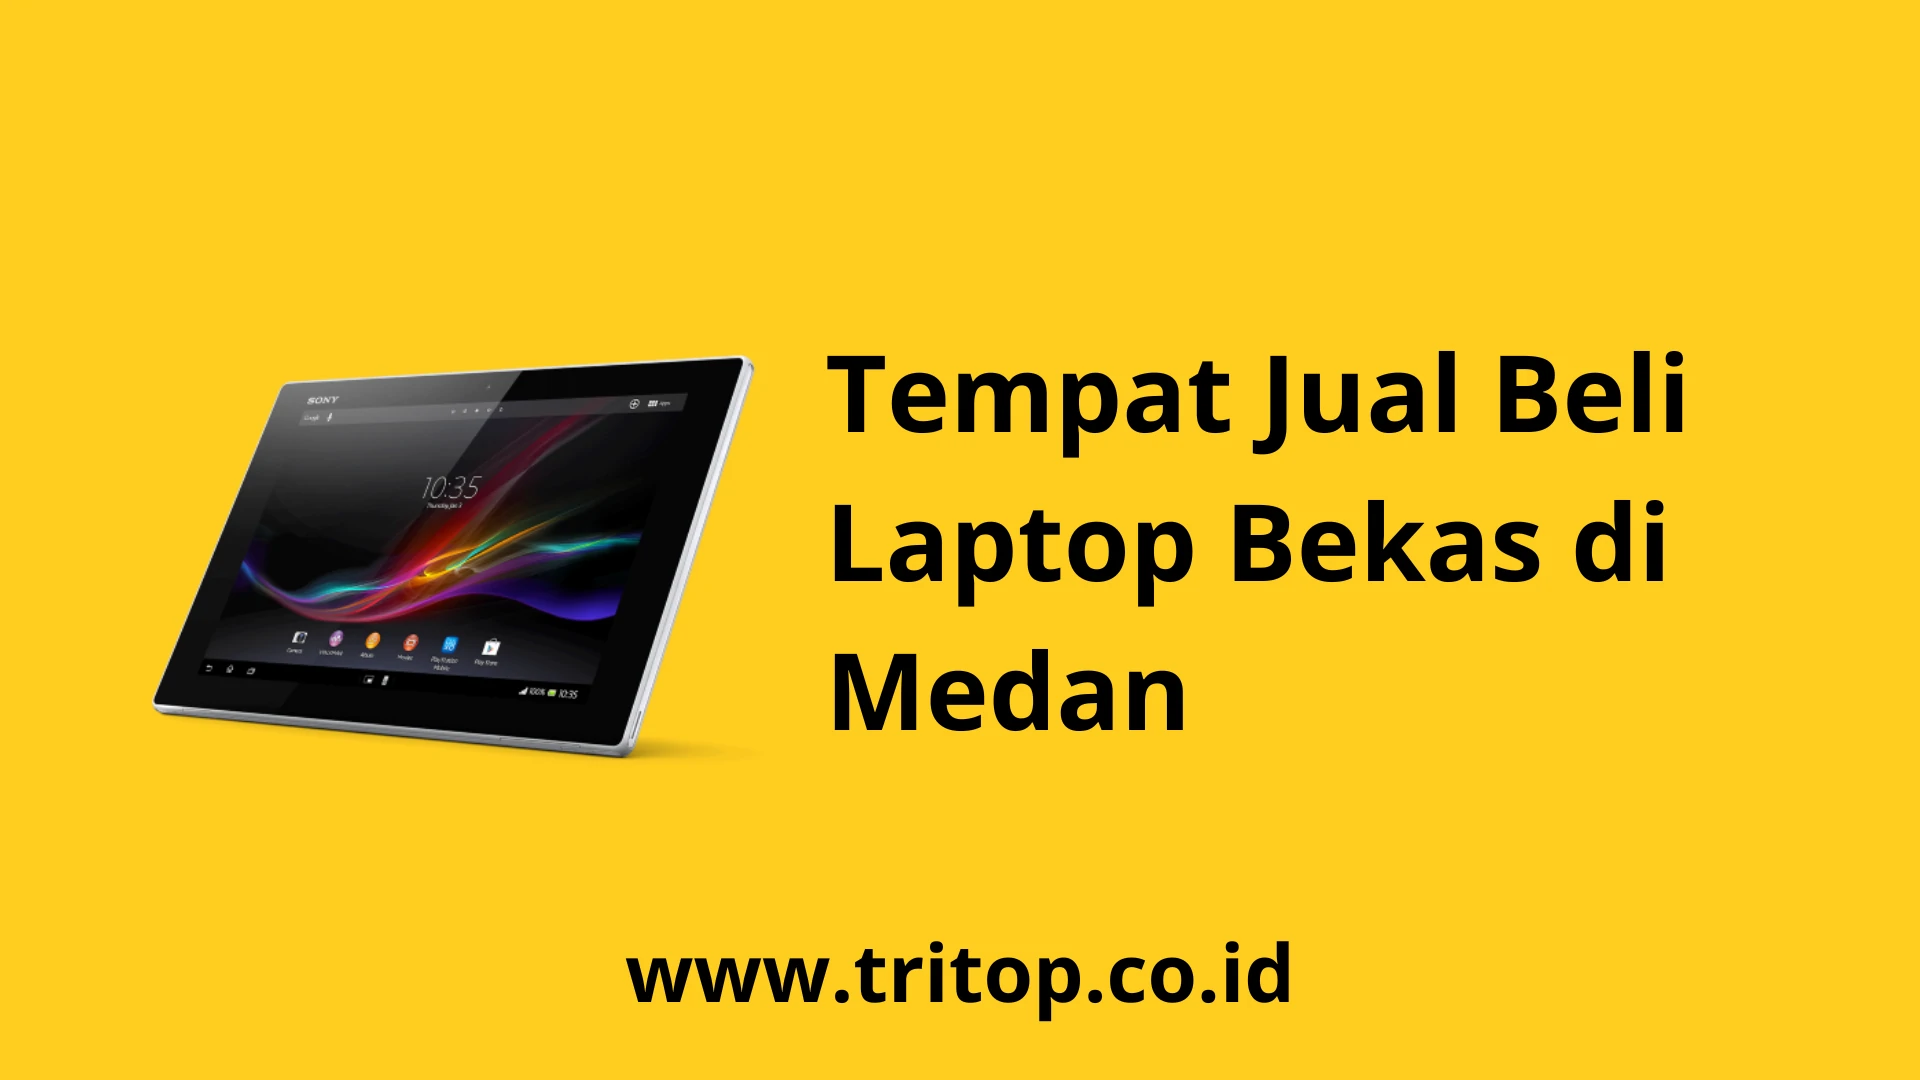 Tempat Jual Beli Laptop Bekas di Medan